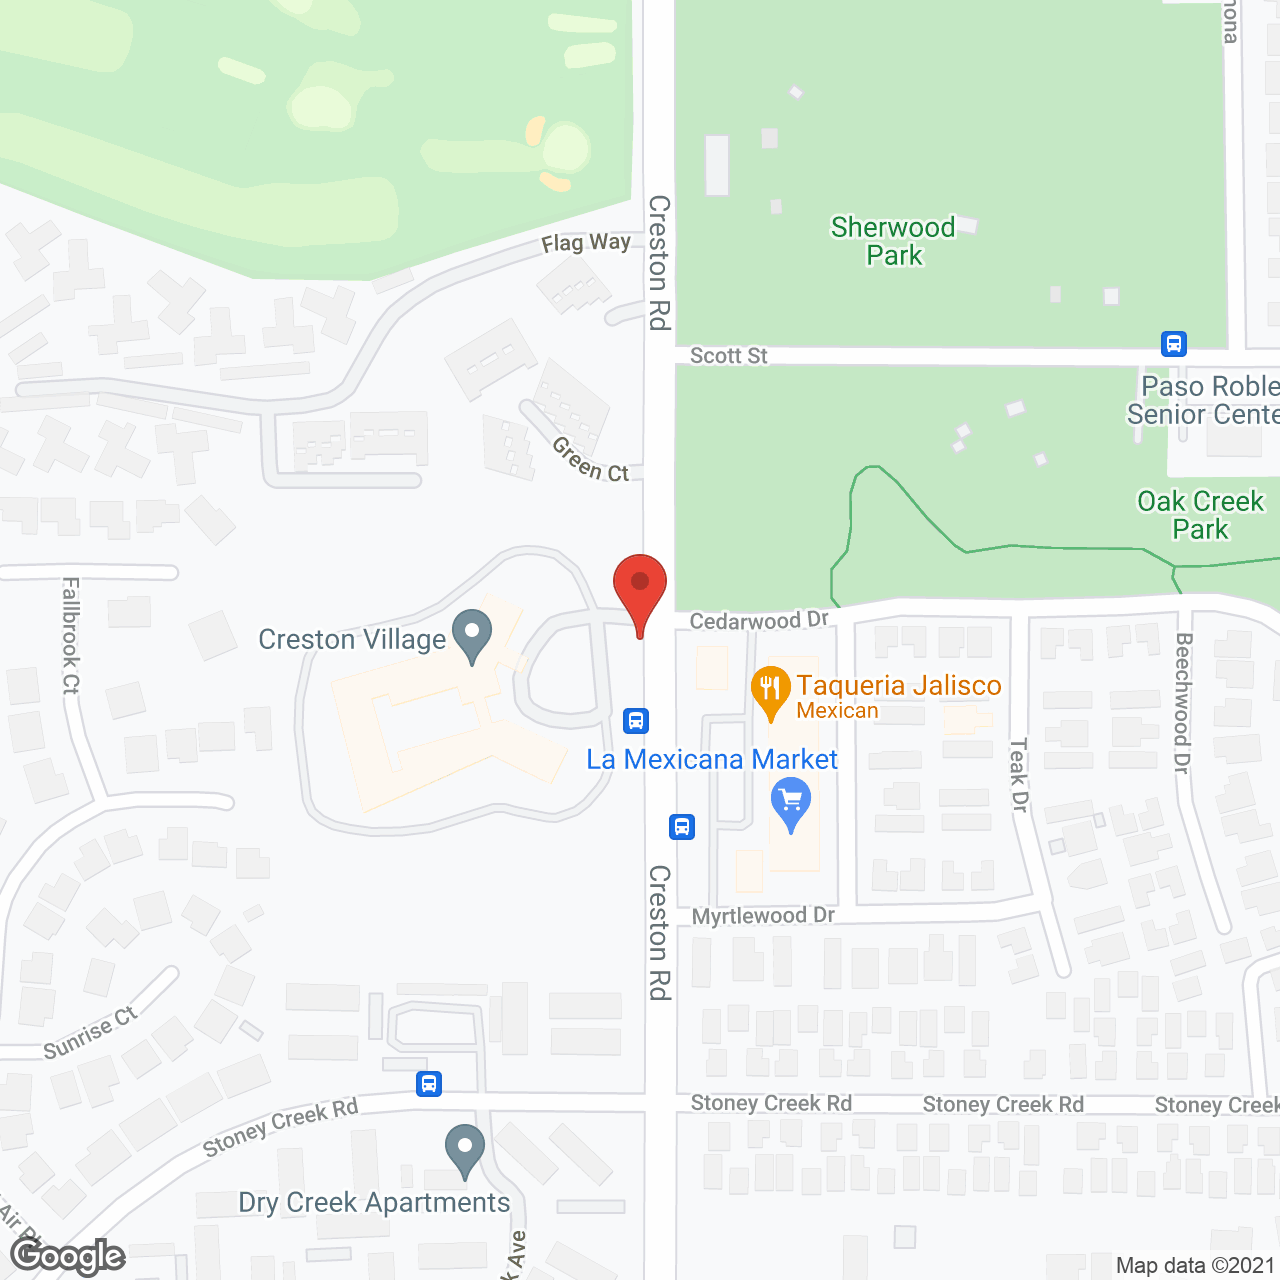 Creston Village in google map